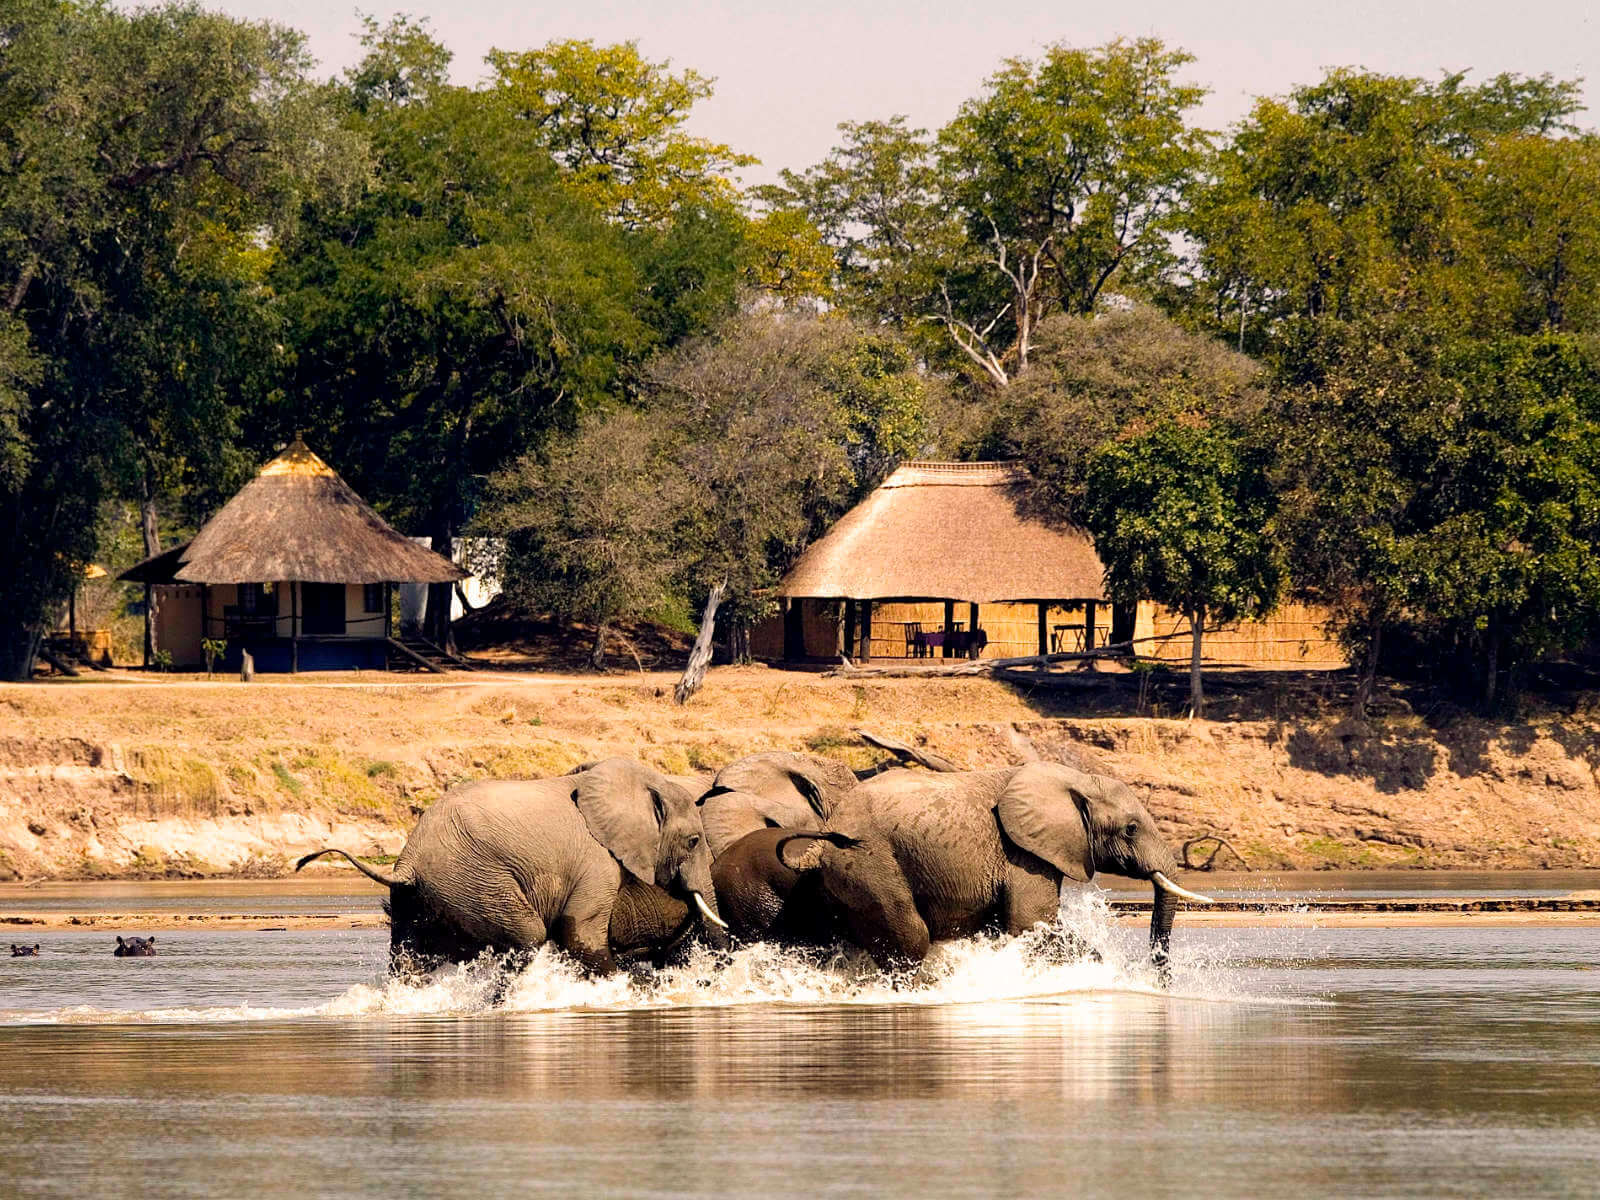 Elefanten im Wasser vor dem Camp